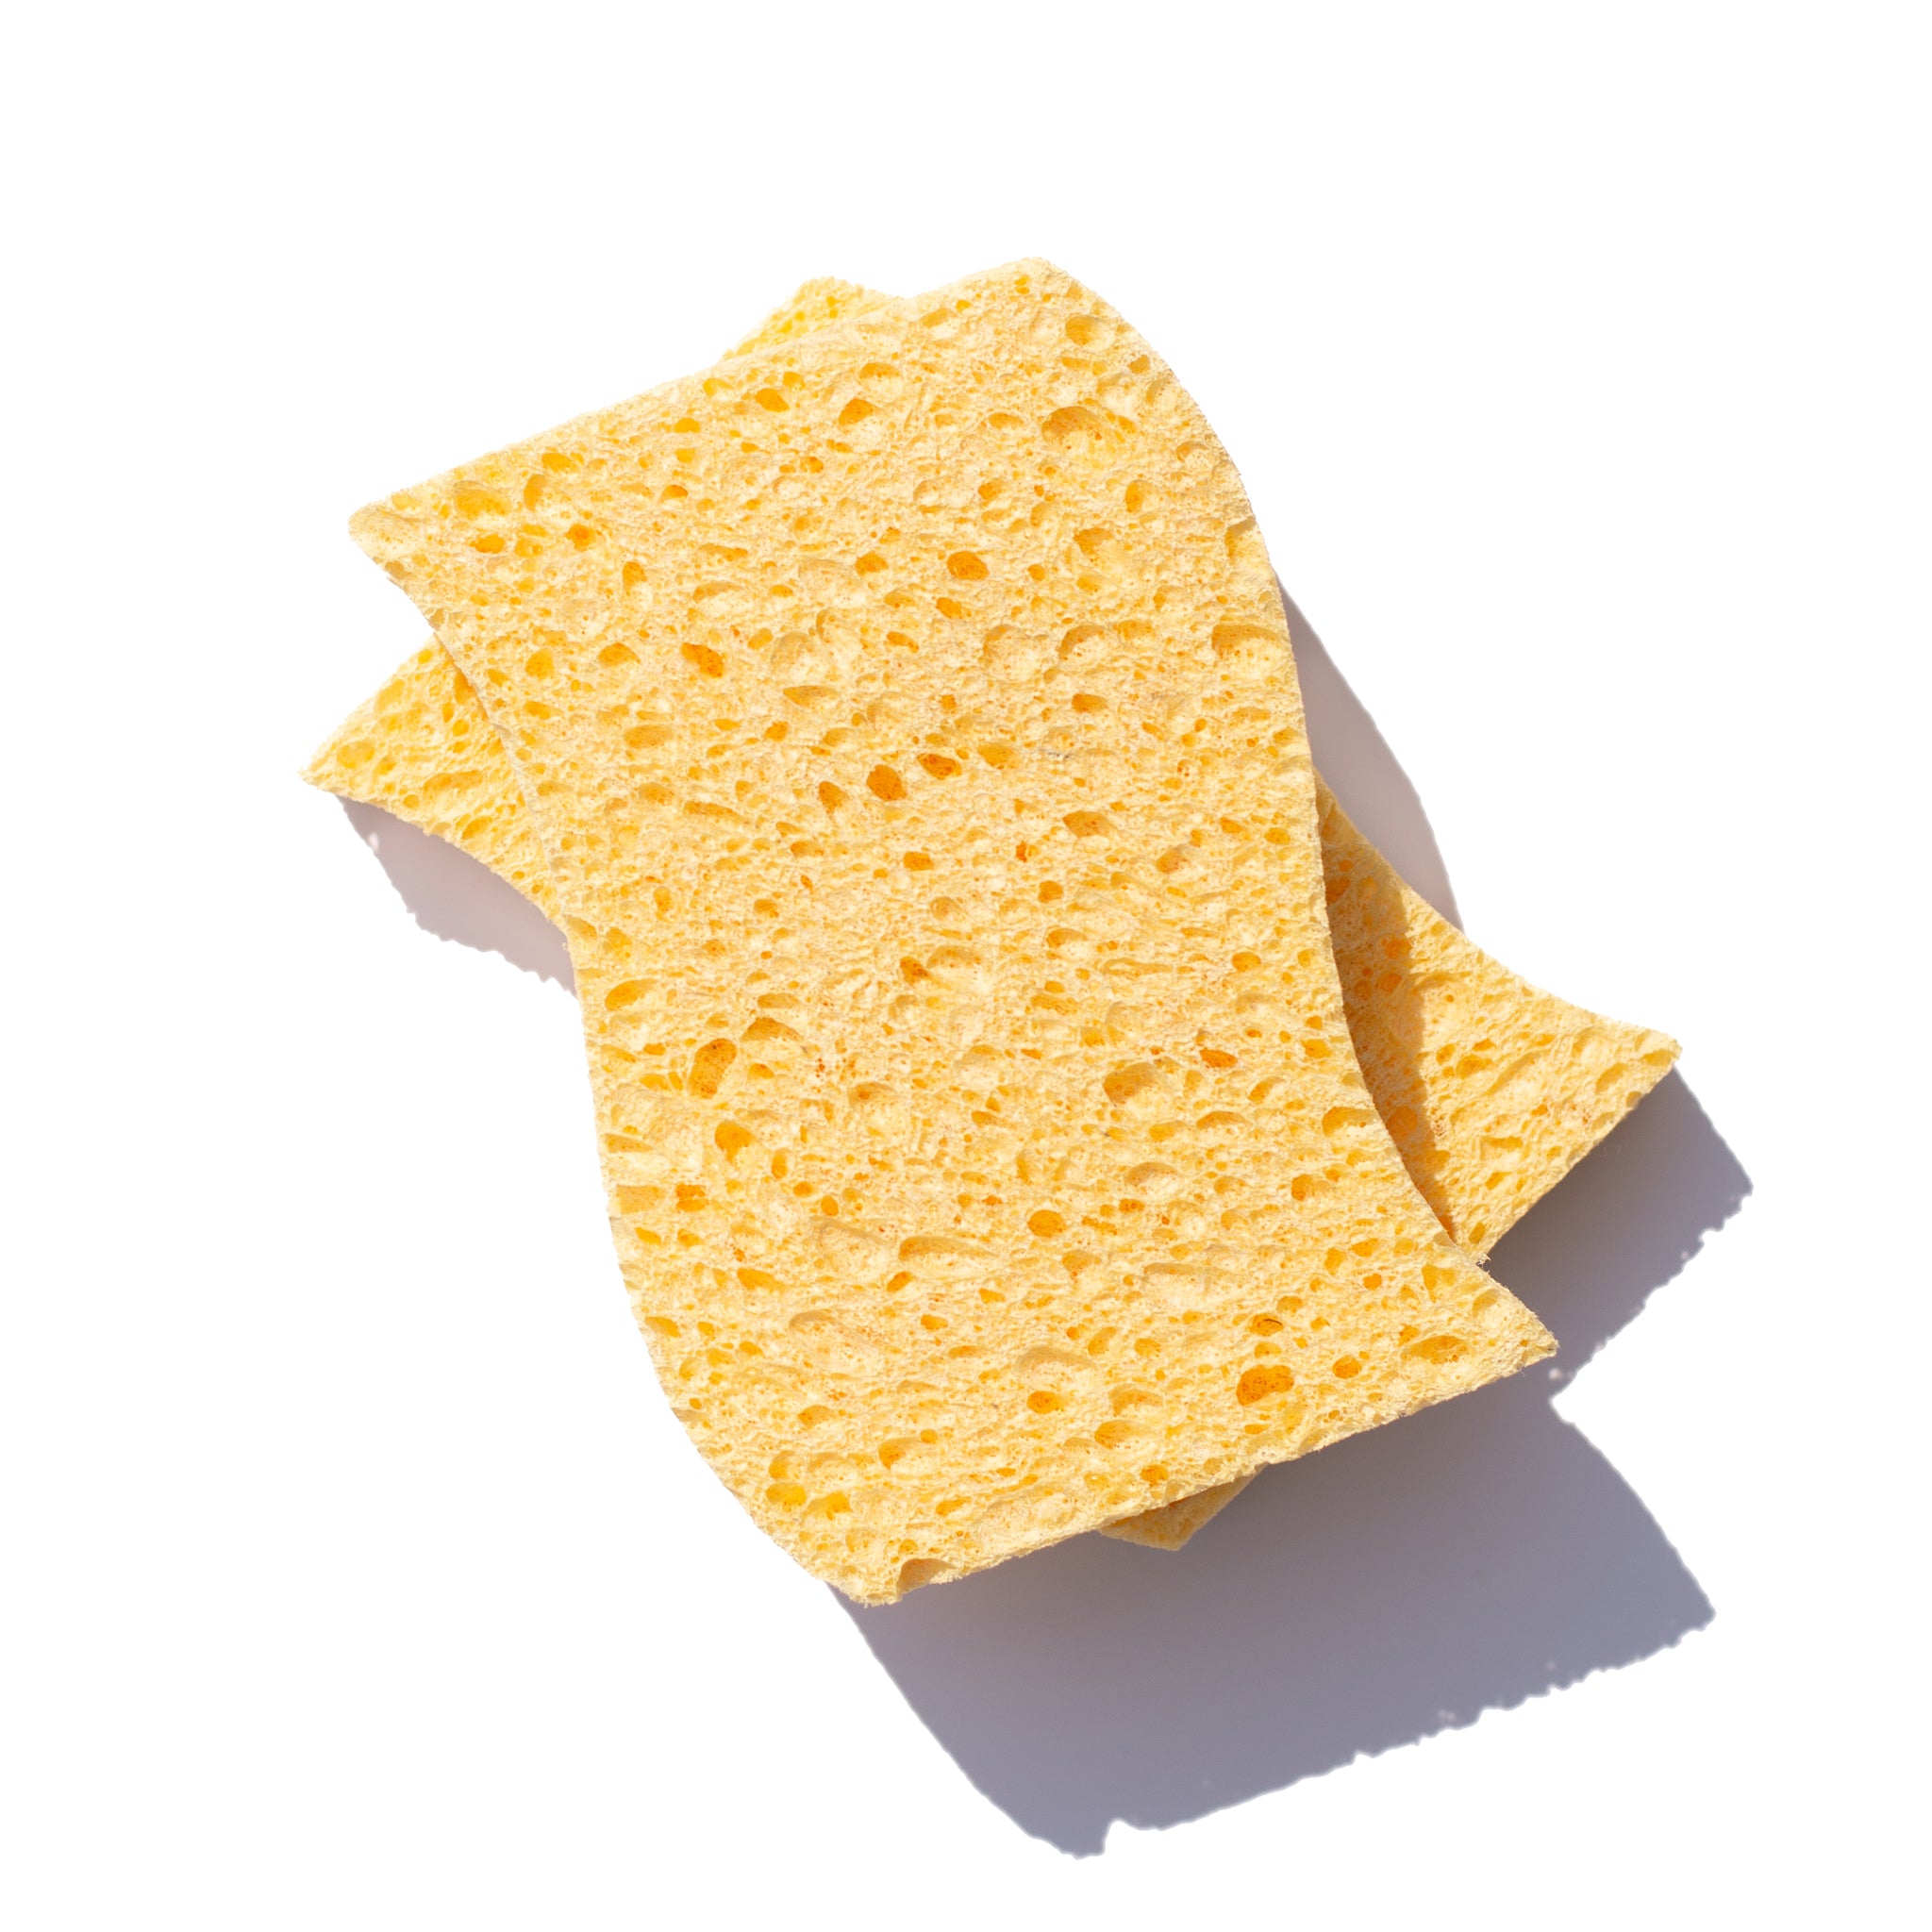 https://shop.freetheocean.com/cdn/shop/files/fto-custom-biodegradable-sponges-image-white-background-2.jpg?v=1688591374